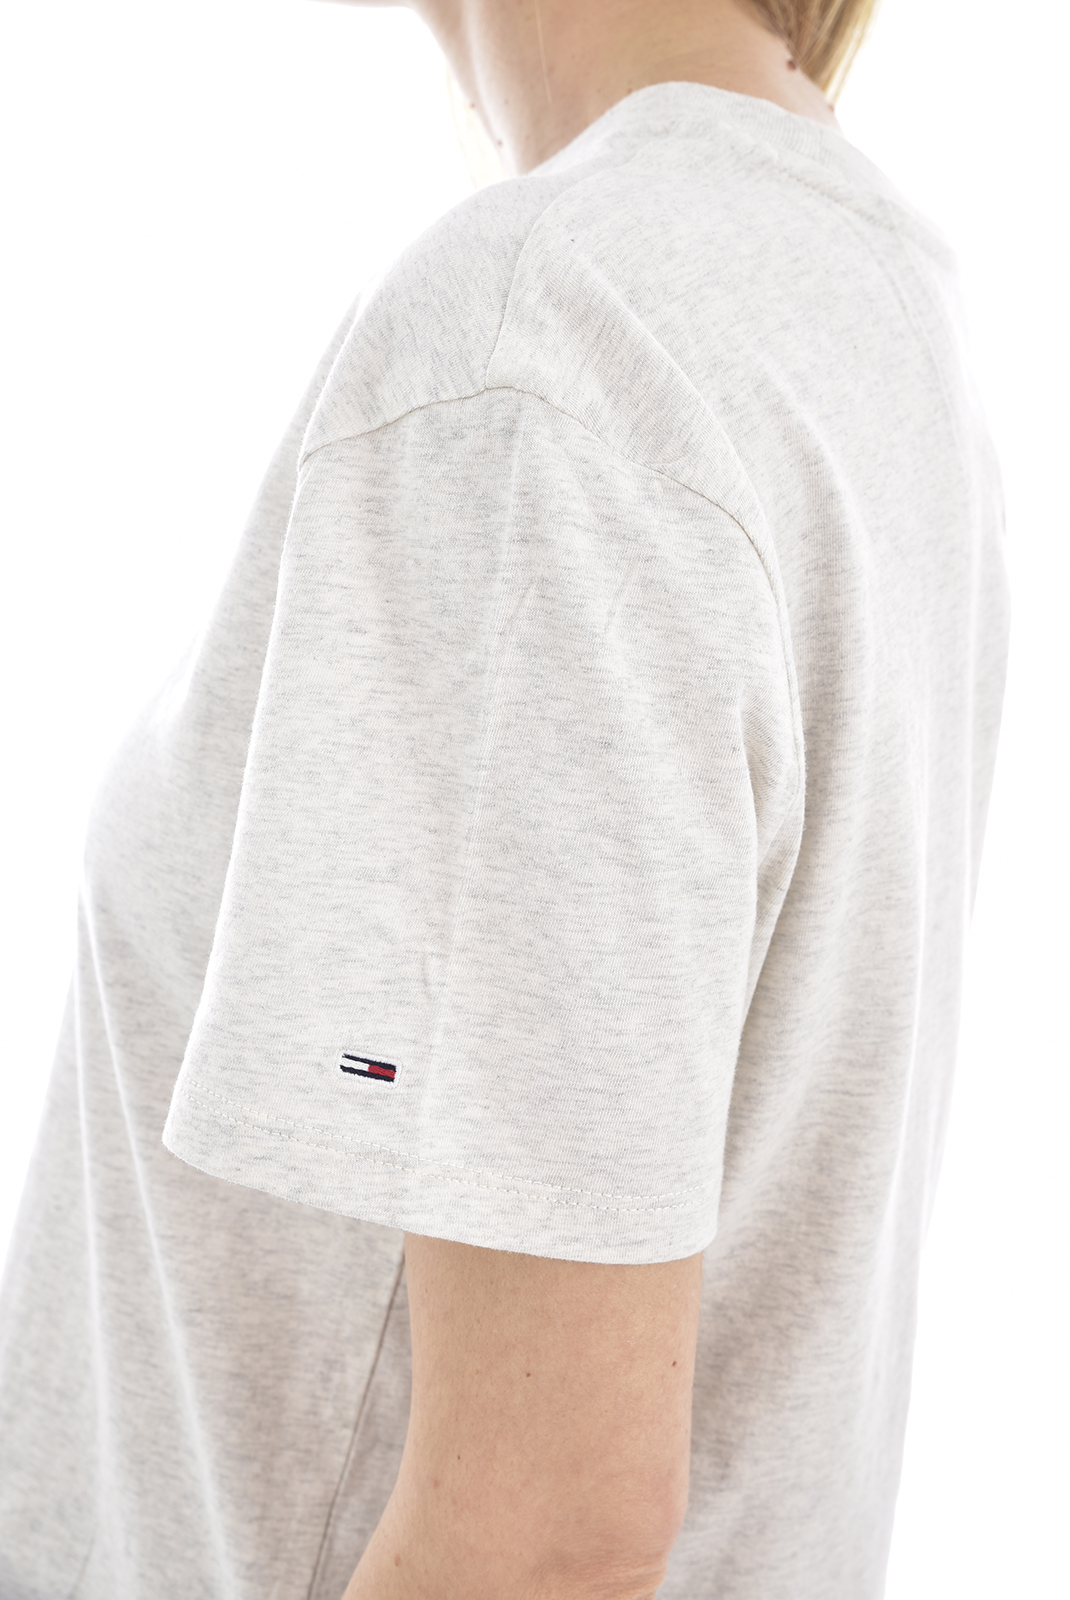 Tee-shirt gris à manches courtes Tommy Jeans - DW06721